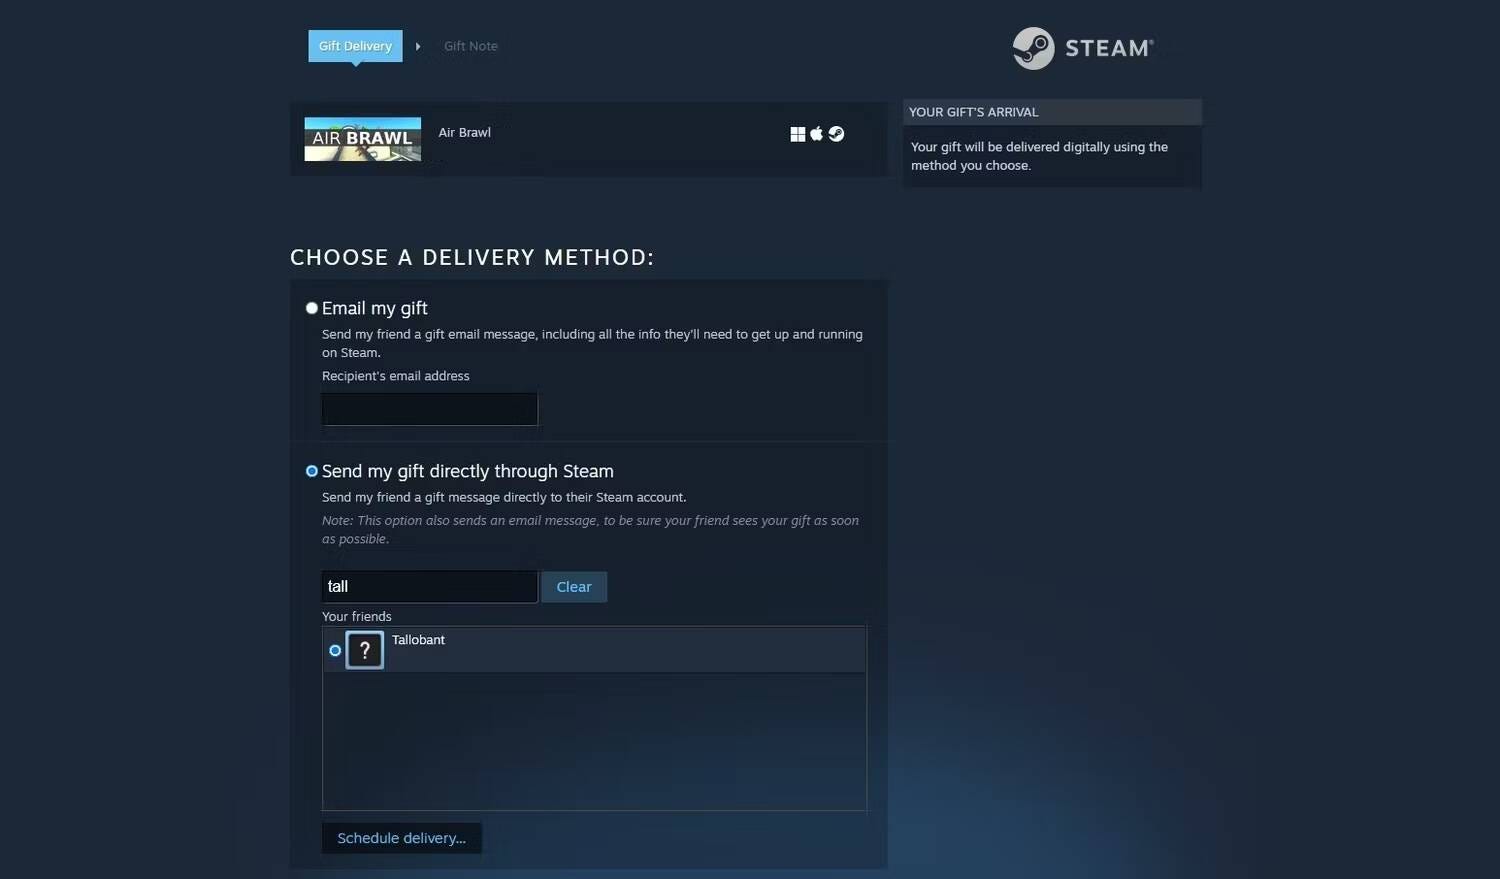 دليل كيفية إرسال الألعاب عبر Steam كهدايا لمشاركة المرح والتسلية - شروحات